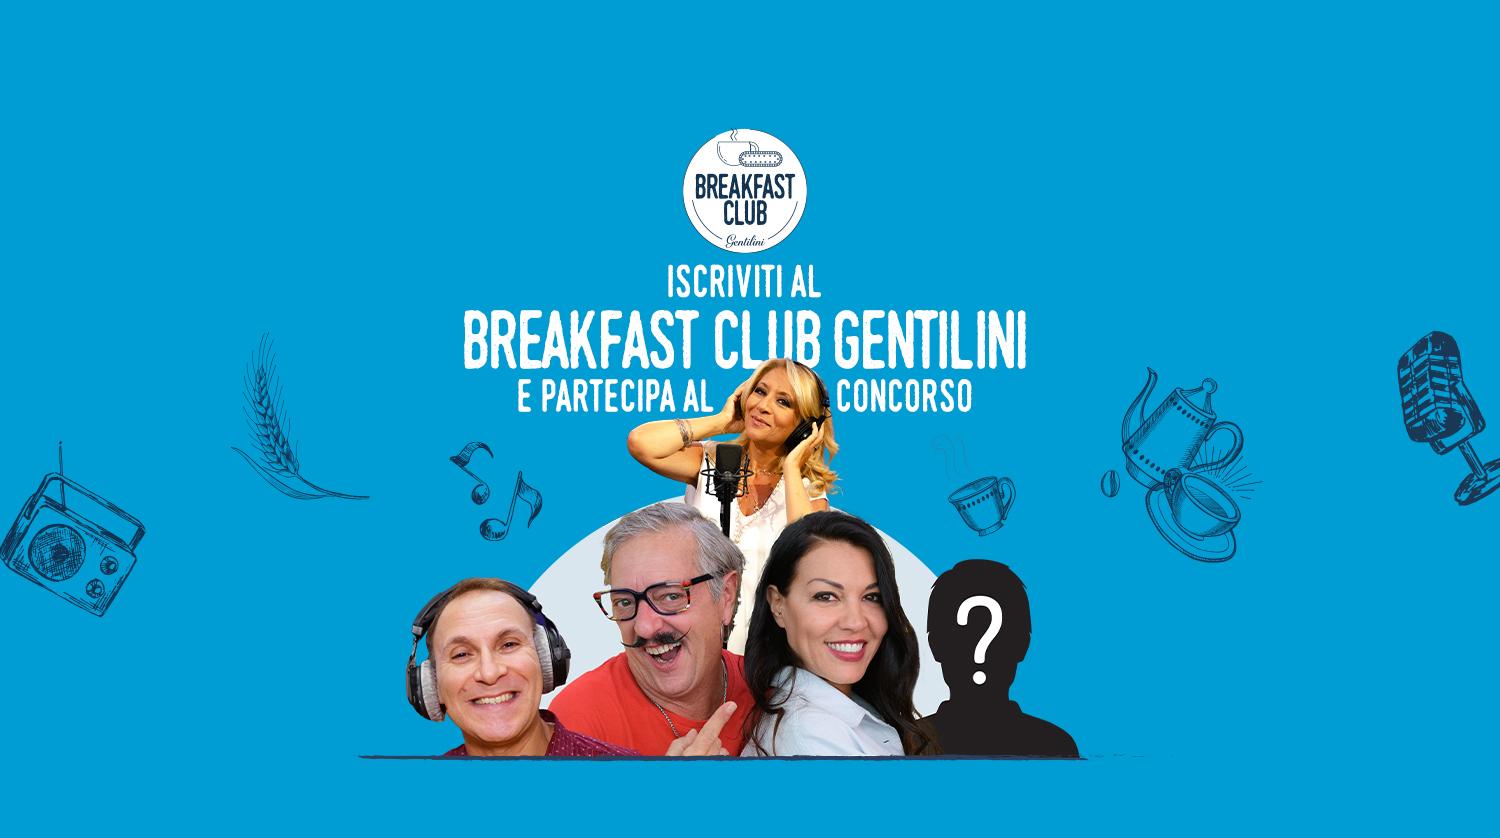 Breakfast Club Gentilini